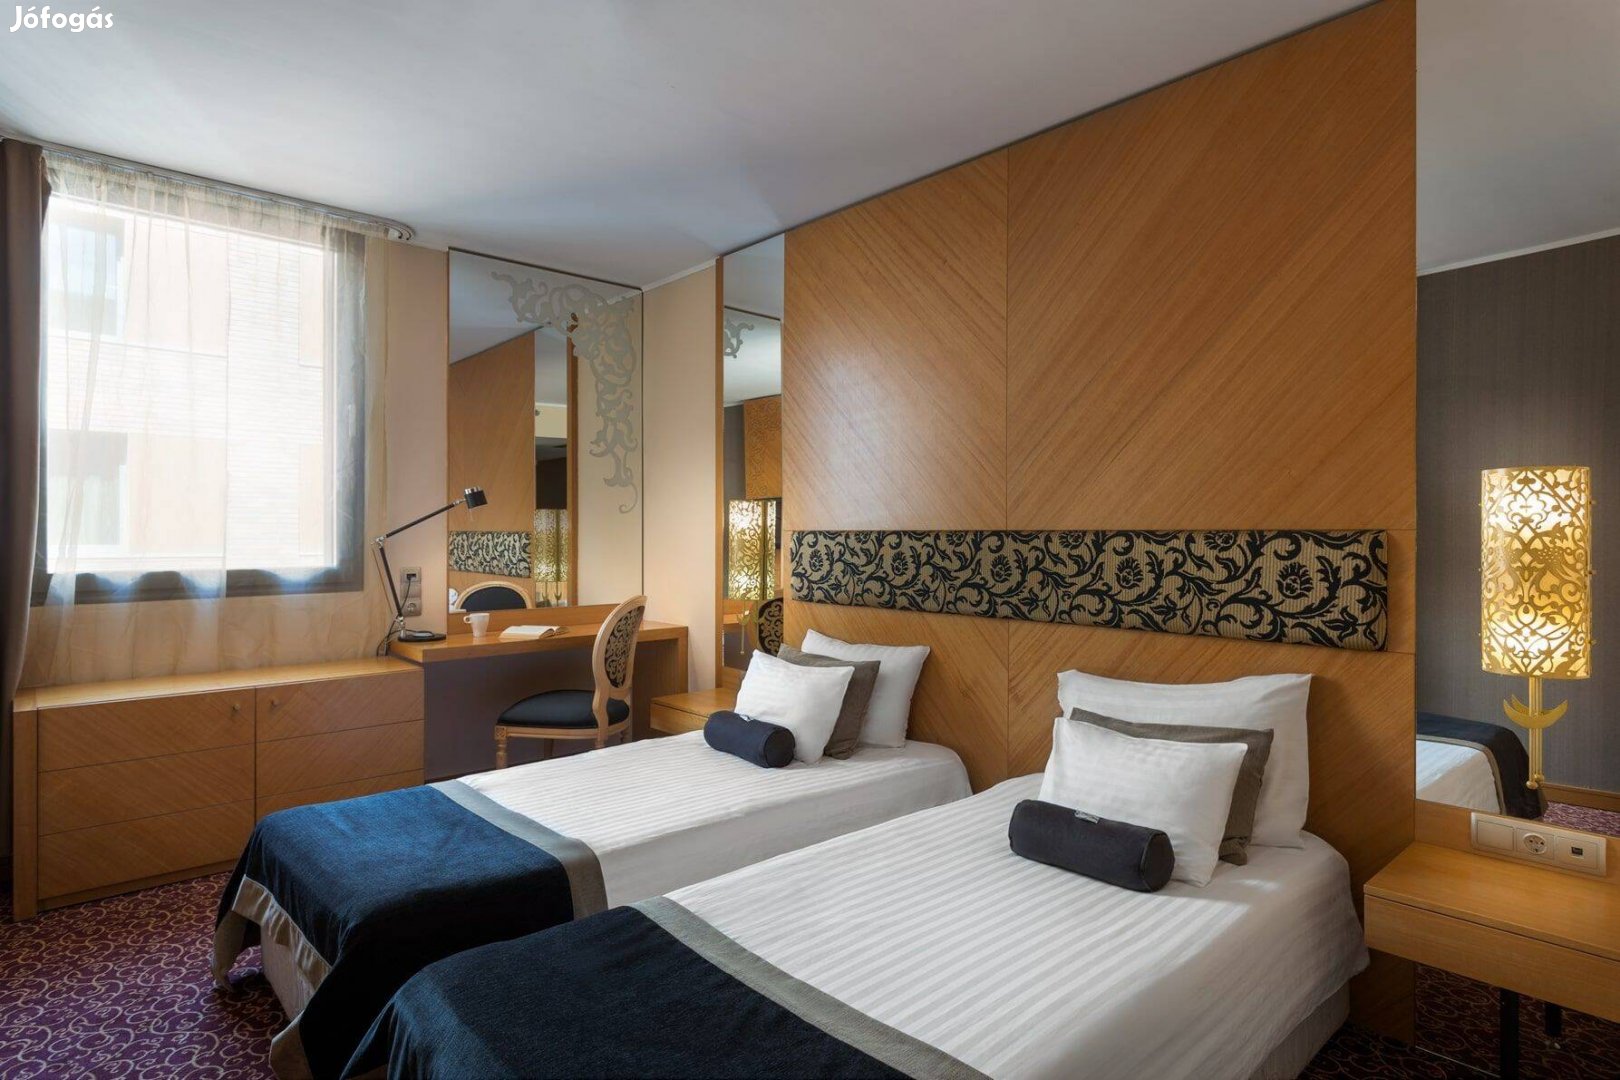 Budapesti belvárosi szálloda szobalányt keres